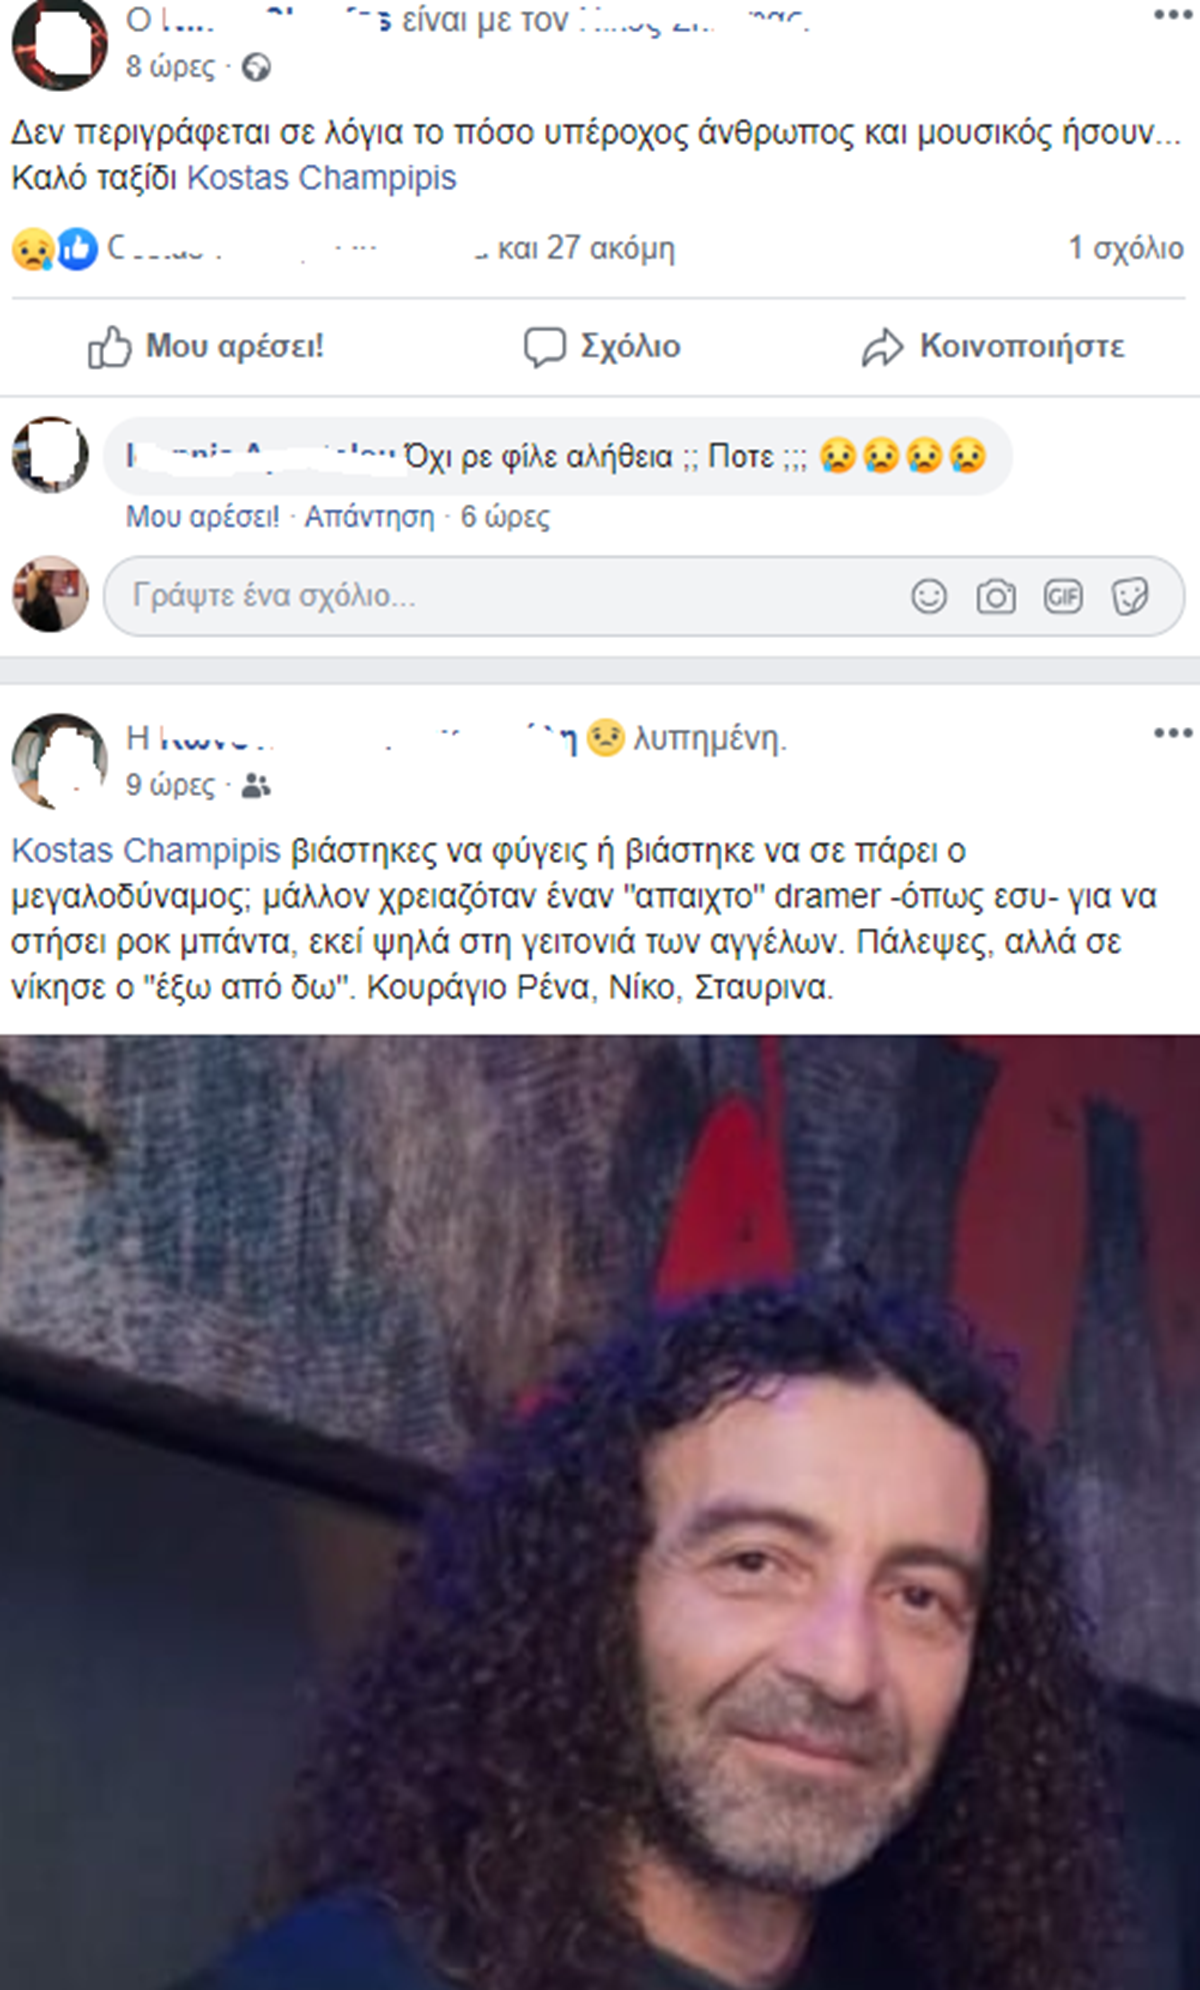 Σήμερα στη Λάρισα το τελευταίο αντίο στον Κώστα Χαμπίπη - Θρήνος στο Facebook για τον αγαπητό μουσικό (φωτο)